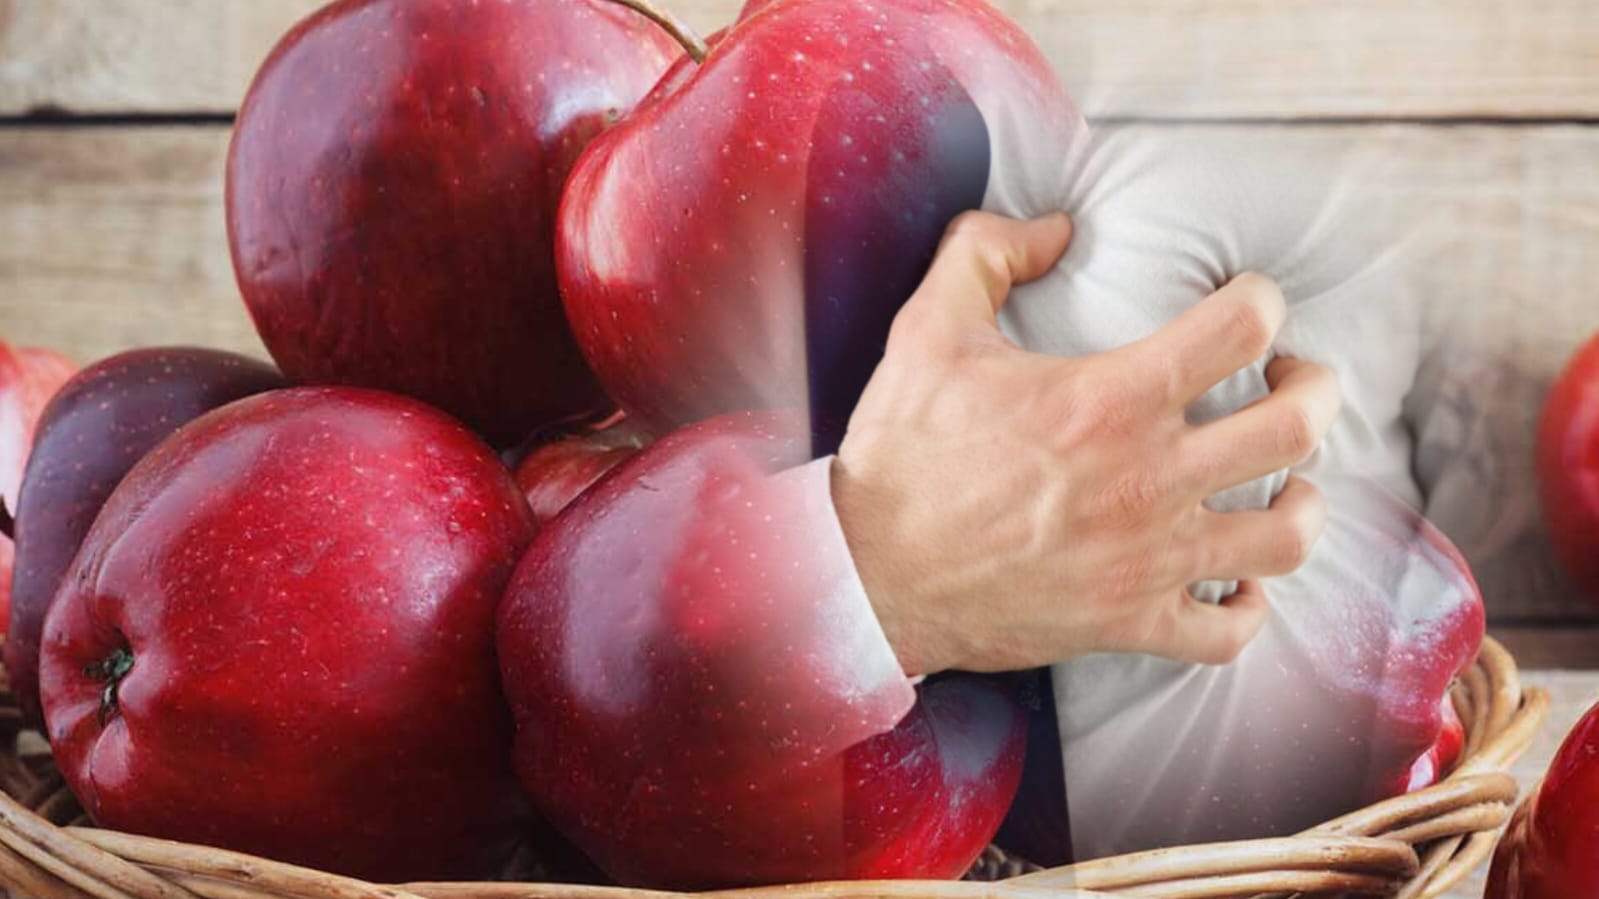 Mencegah Bahaya Jantung dan Stroke dengan Sekotak Apel: Mitos atau Fakta?